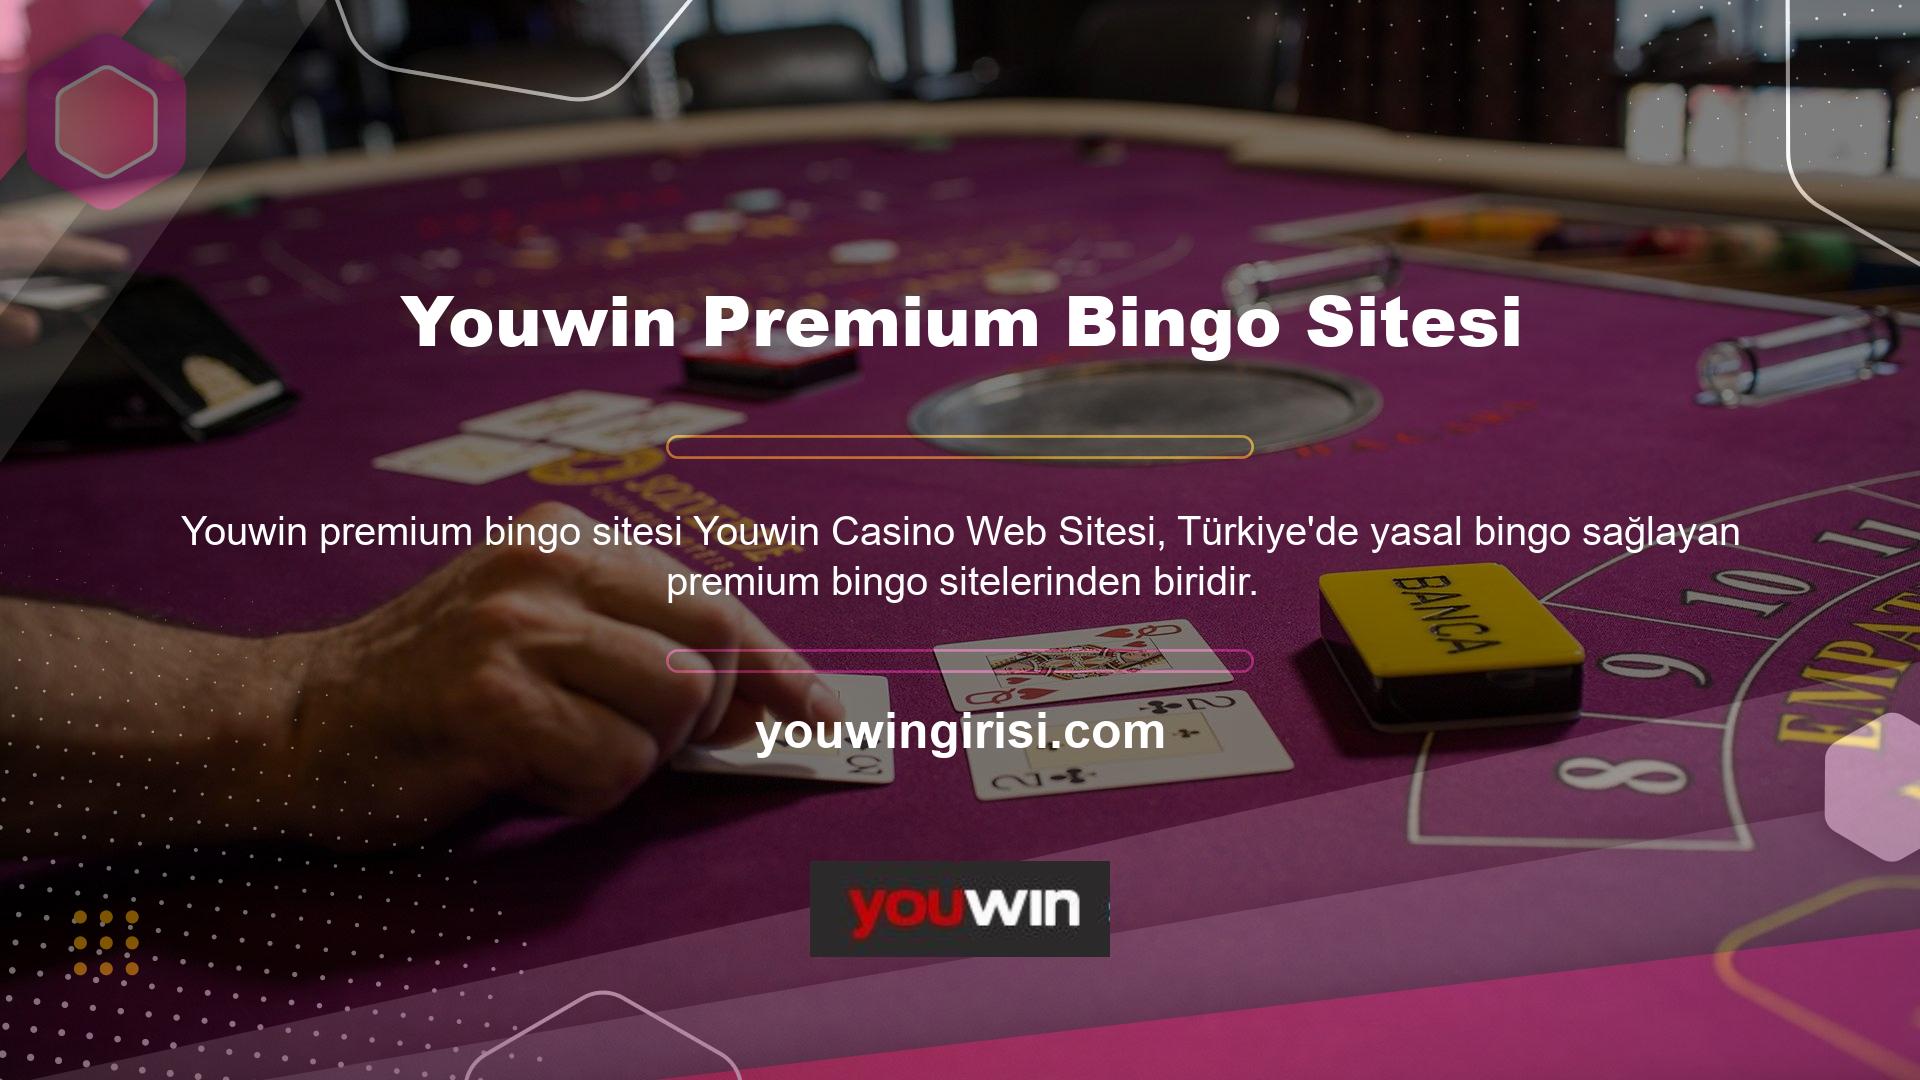 Youwin ana sayfasında Canlı Bingo sekmesine tıkladığınızda canlı bingo oyunları sunarak paralı bingo oynayabilirsiniz